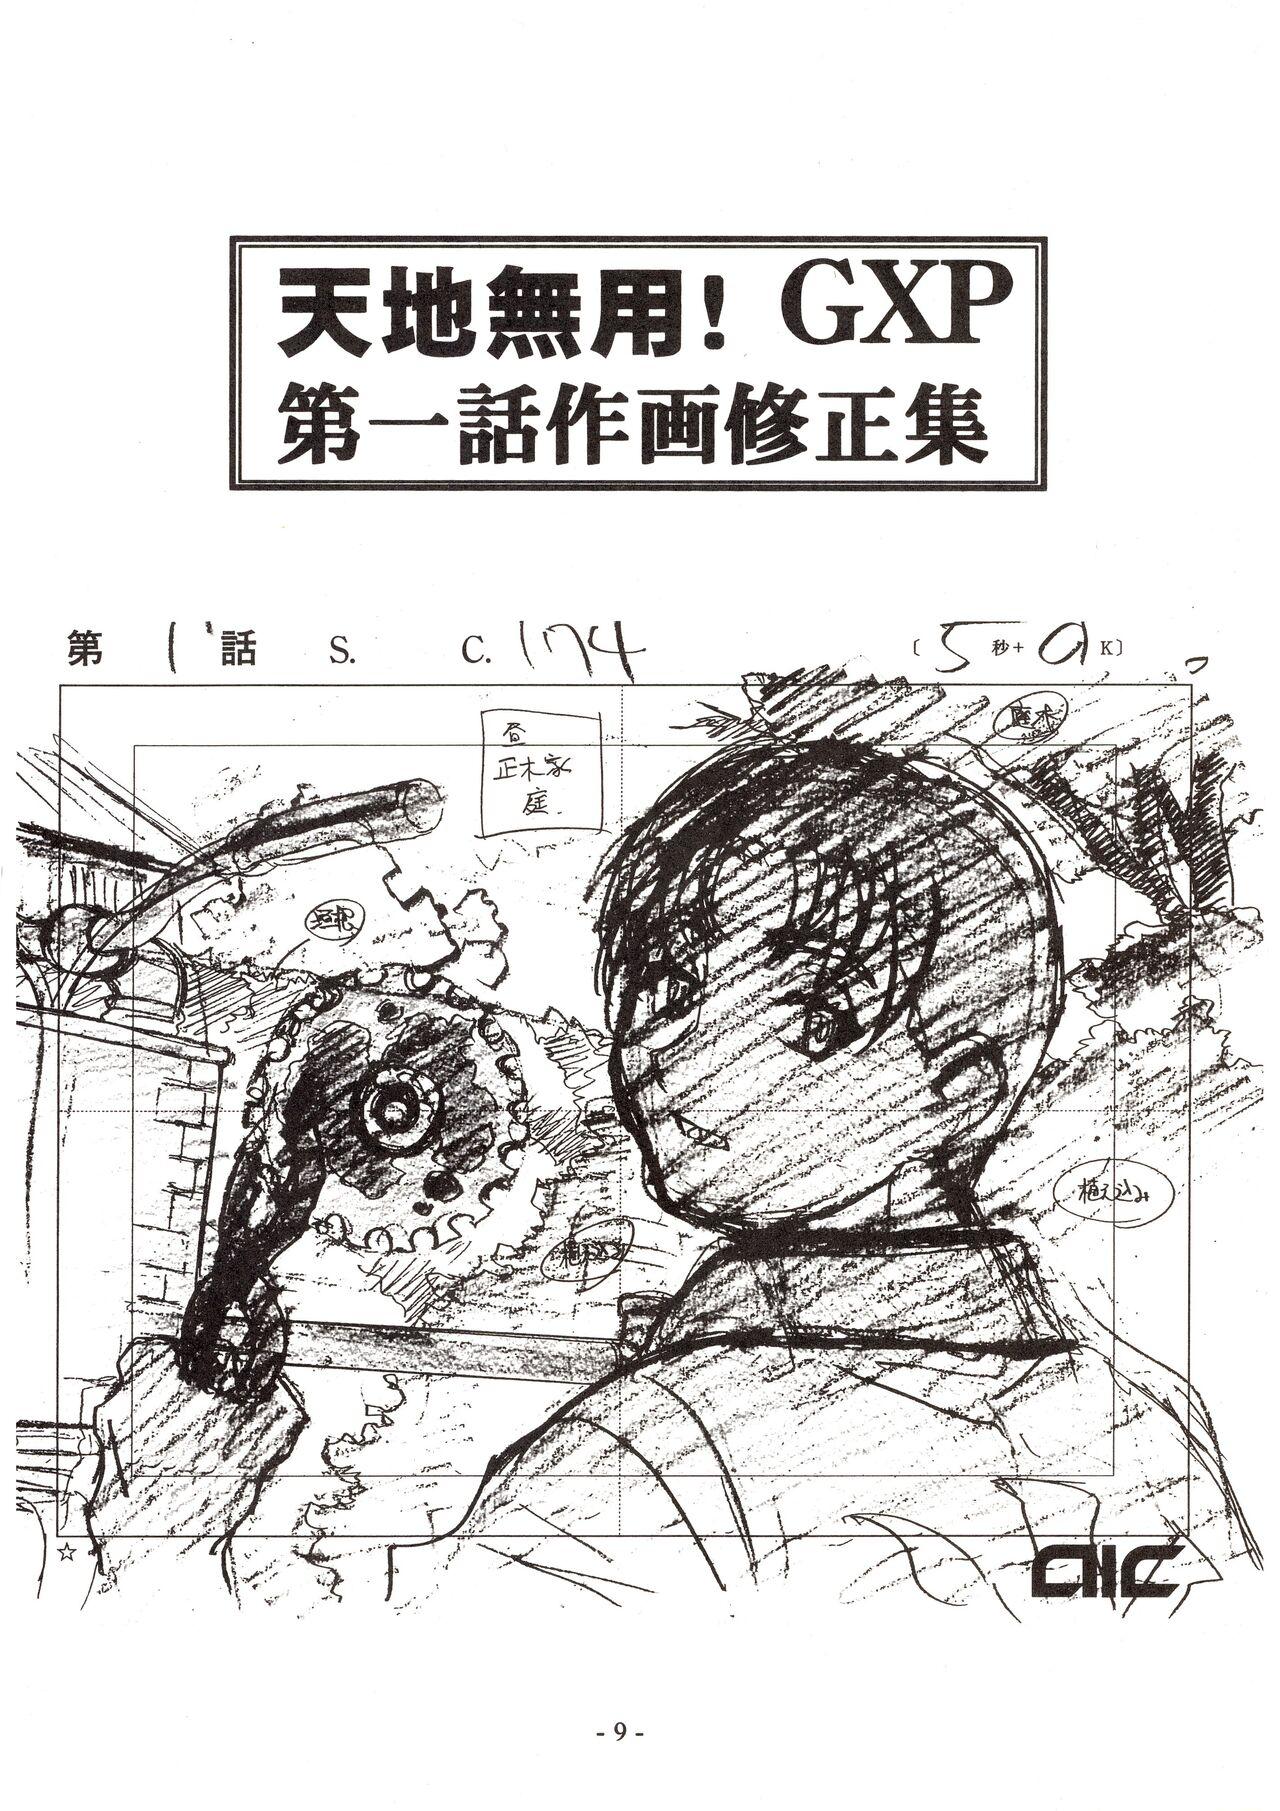 Jun's GXP Okuda Jun Sakuga Nokiroku 8